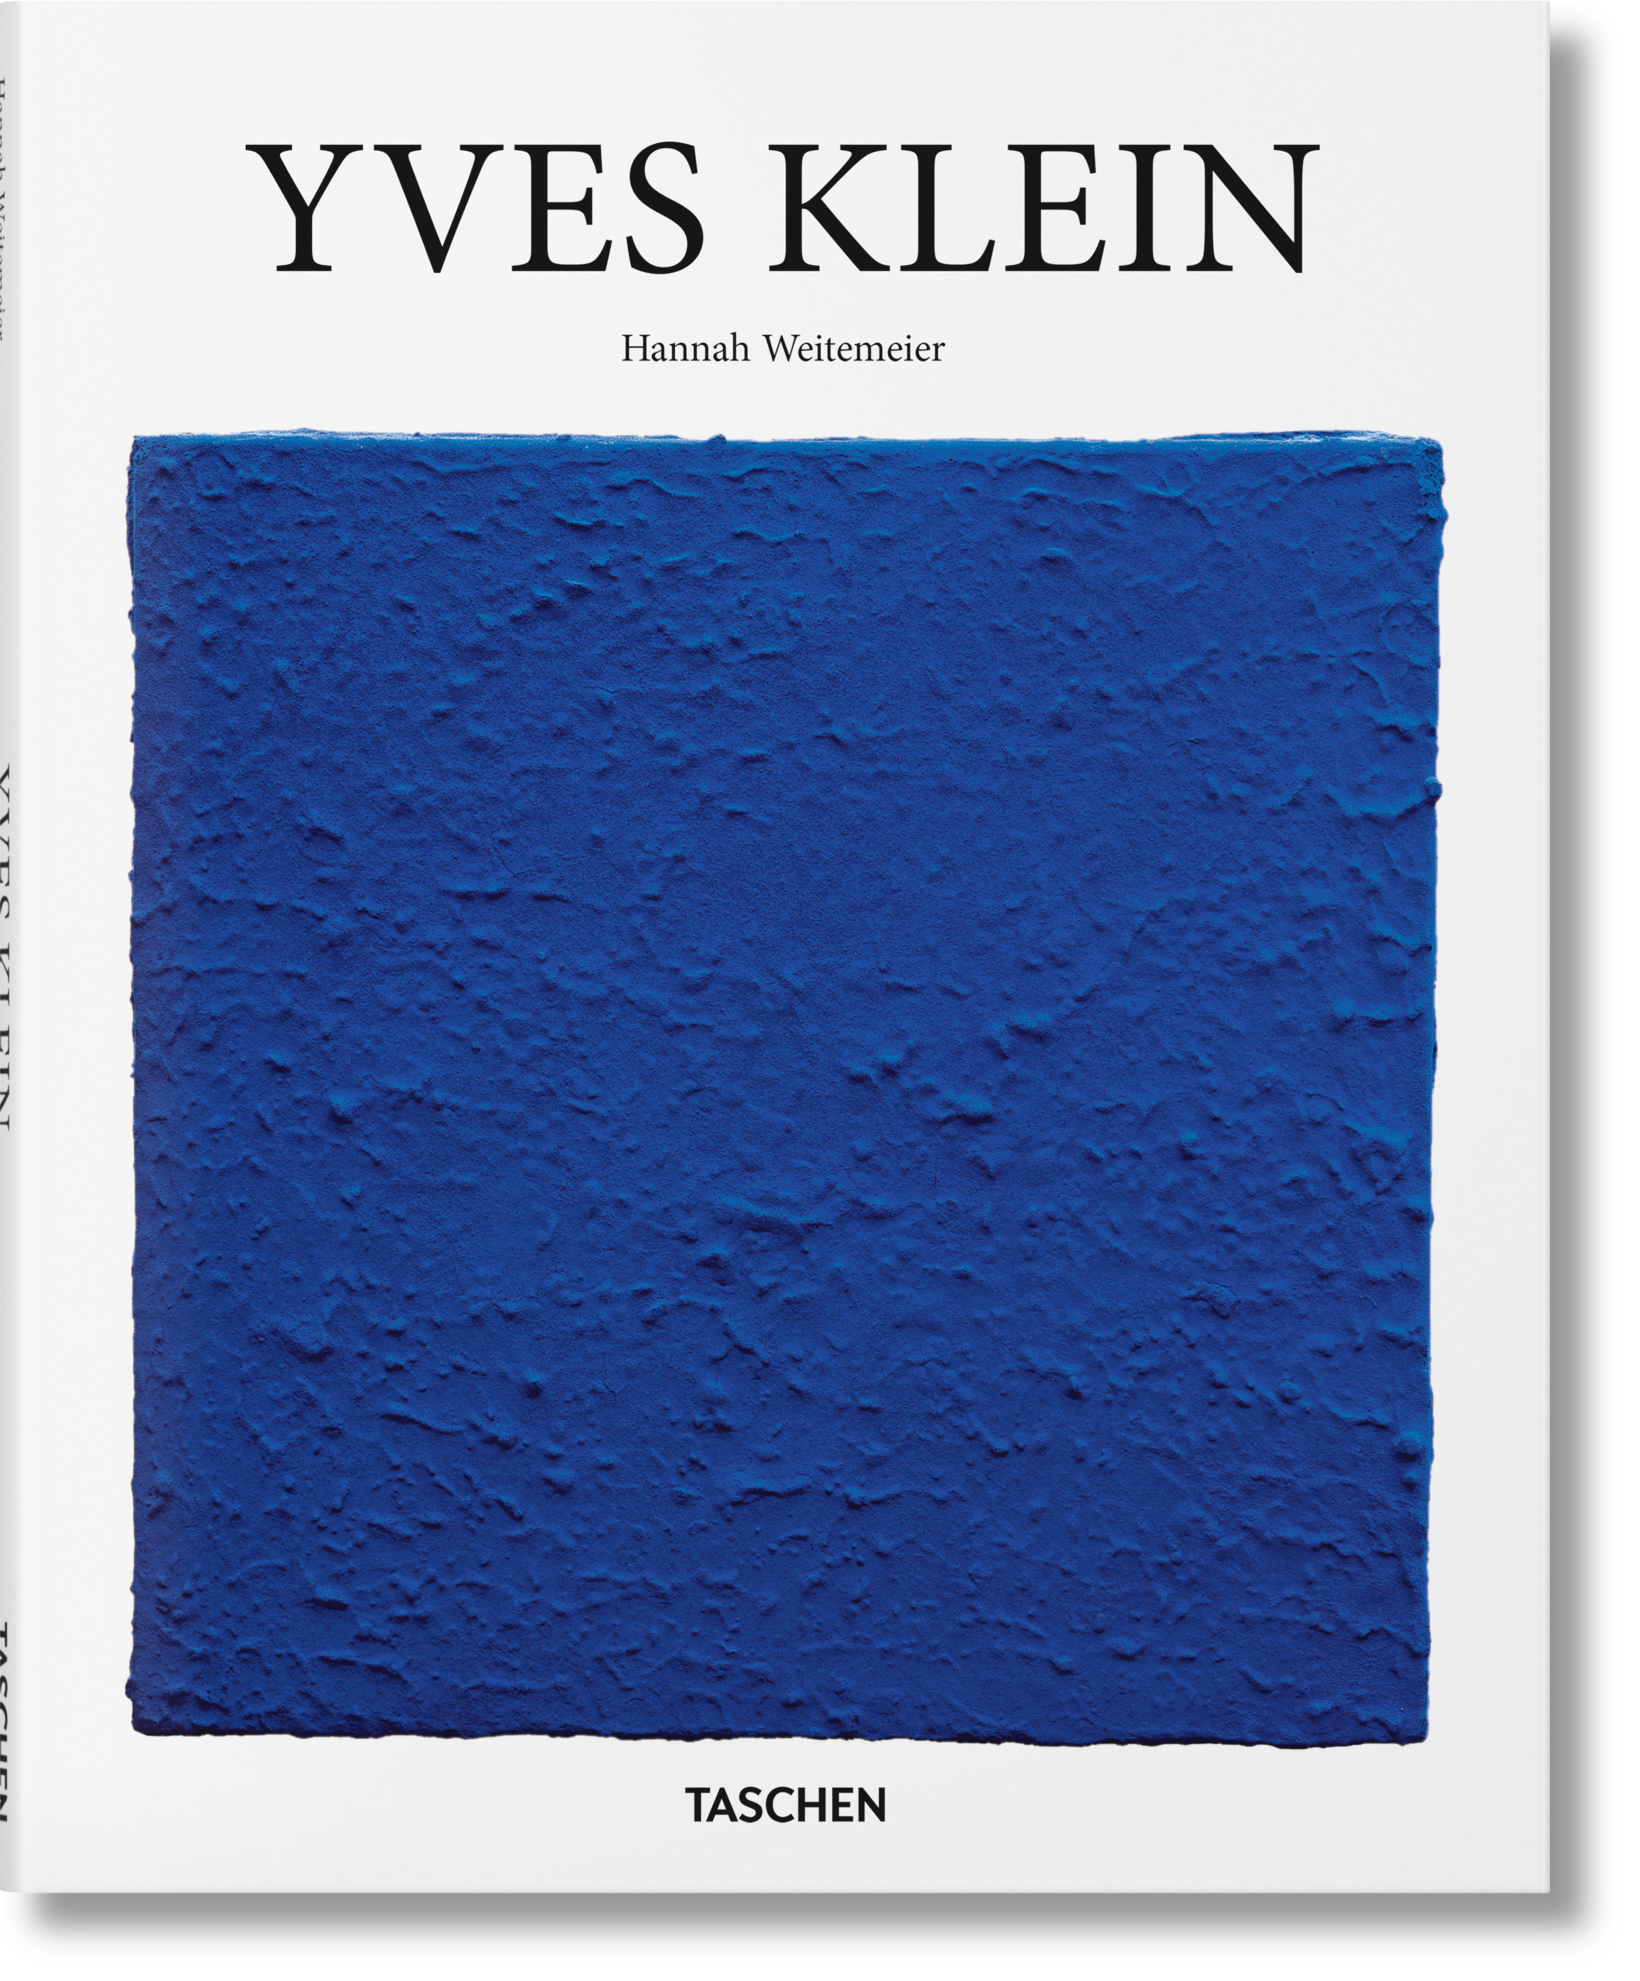 TASCHEN Books: Yves Klein